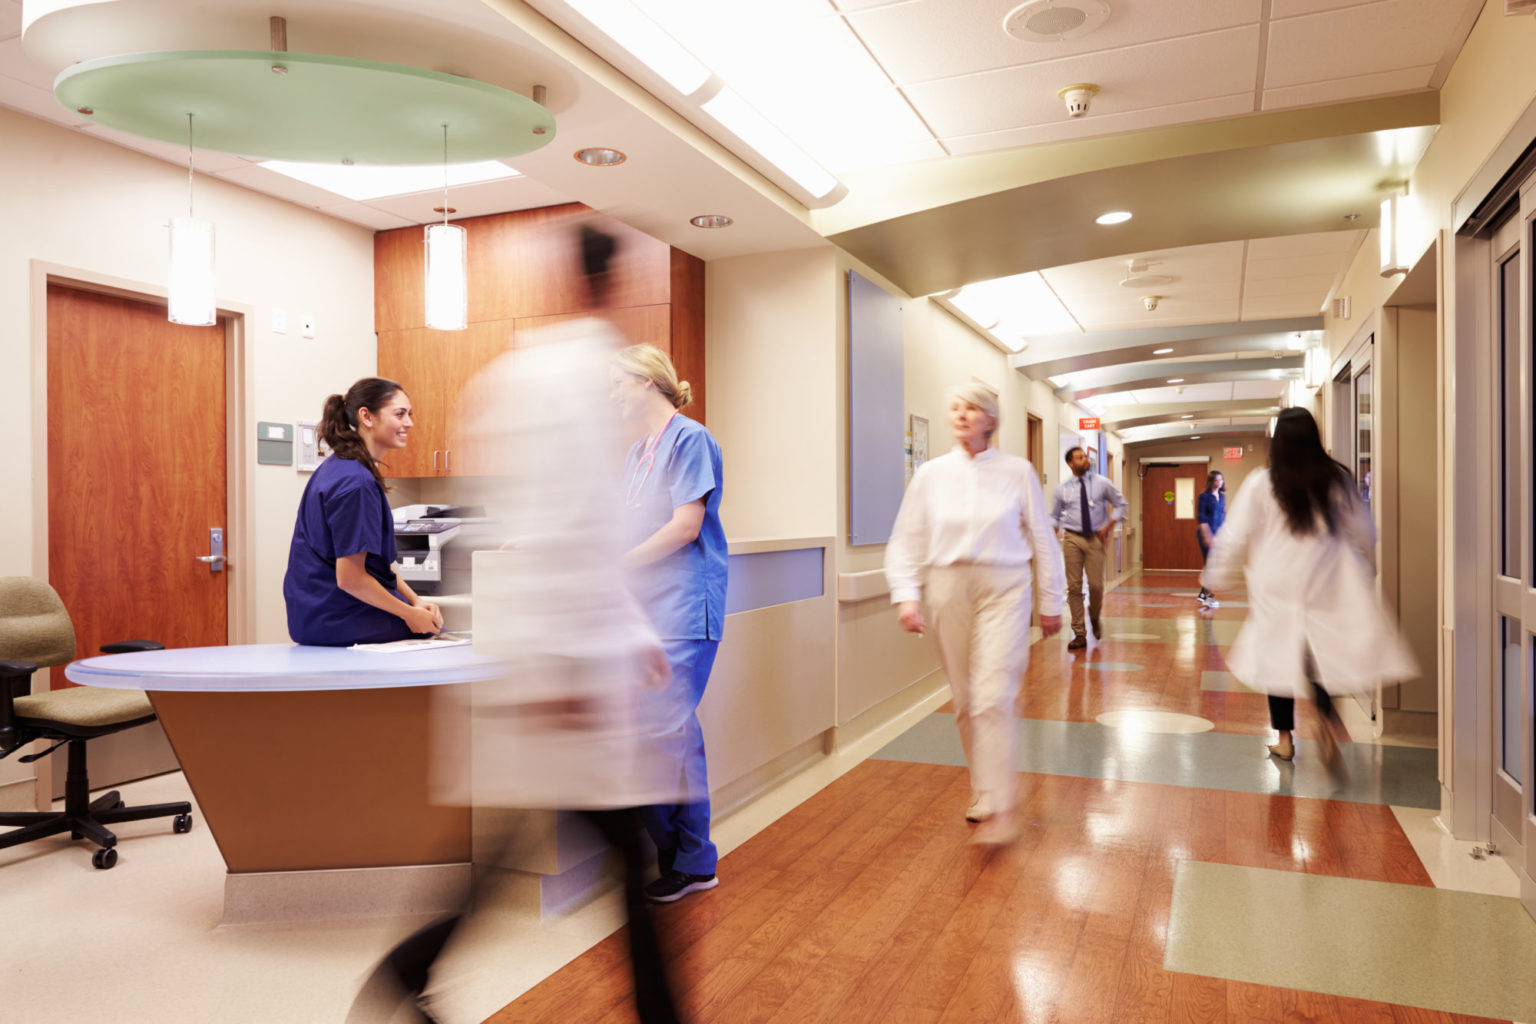 Sykehuskorridor der travle mennesker passerer